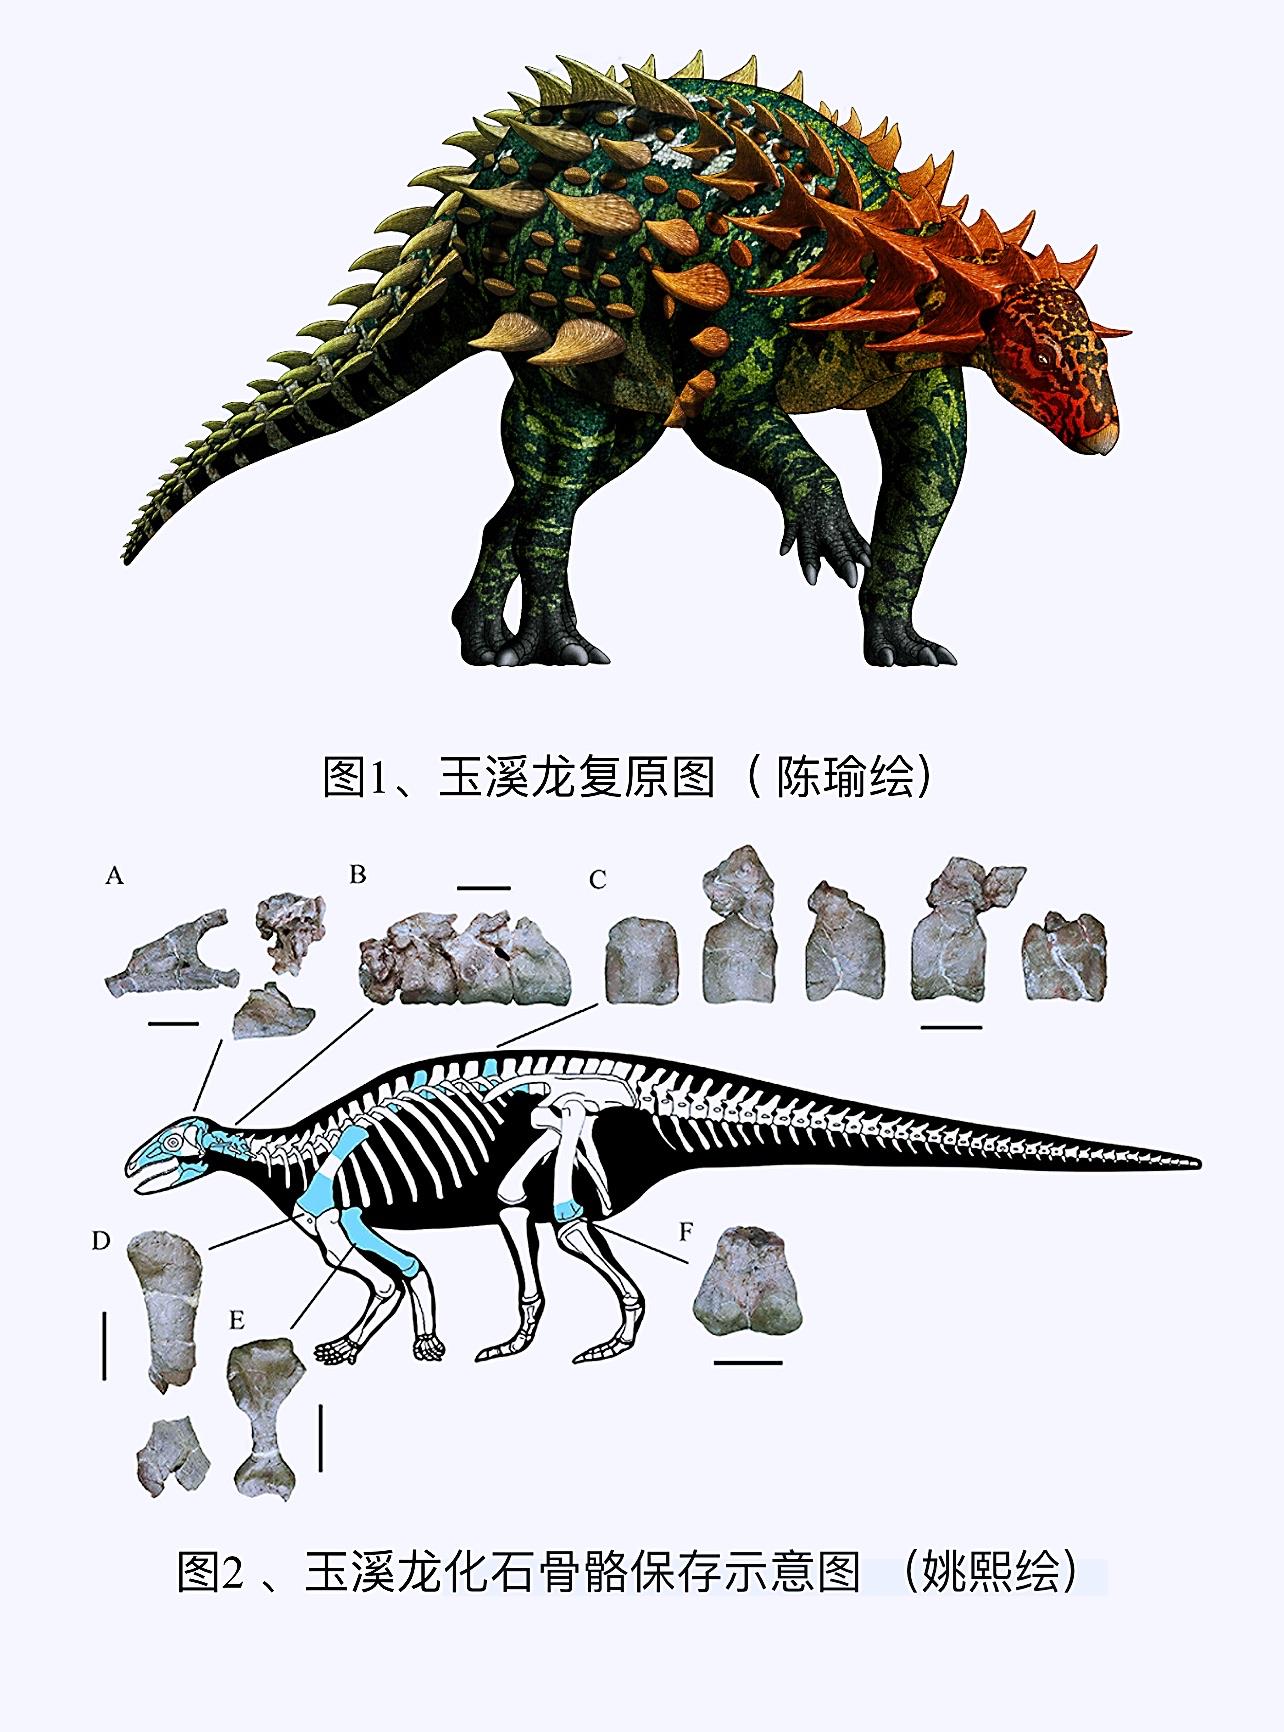 中国发现一新属种有甲类恐龙——科氏玉溪龙